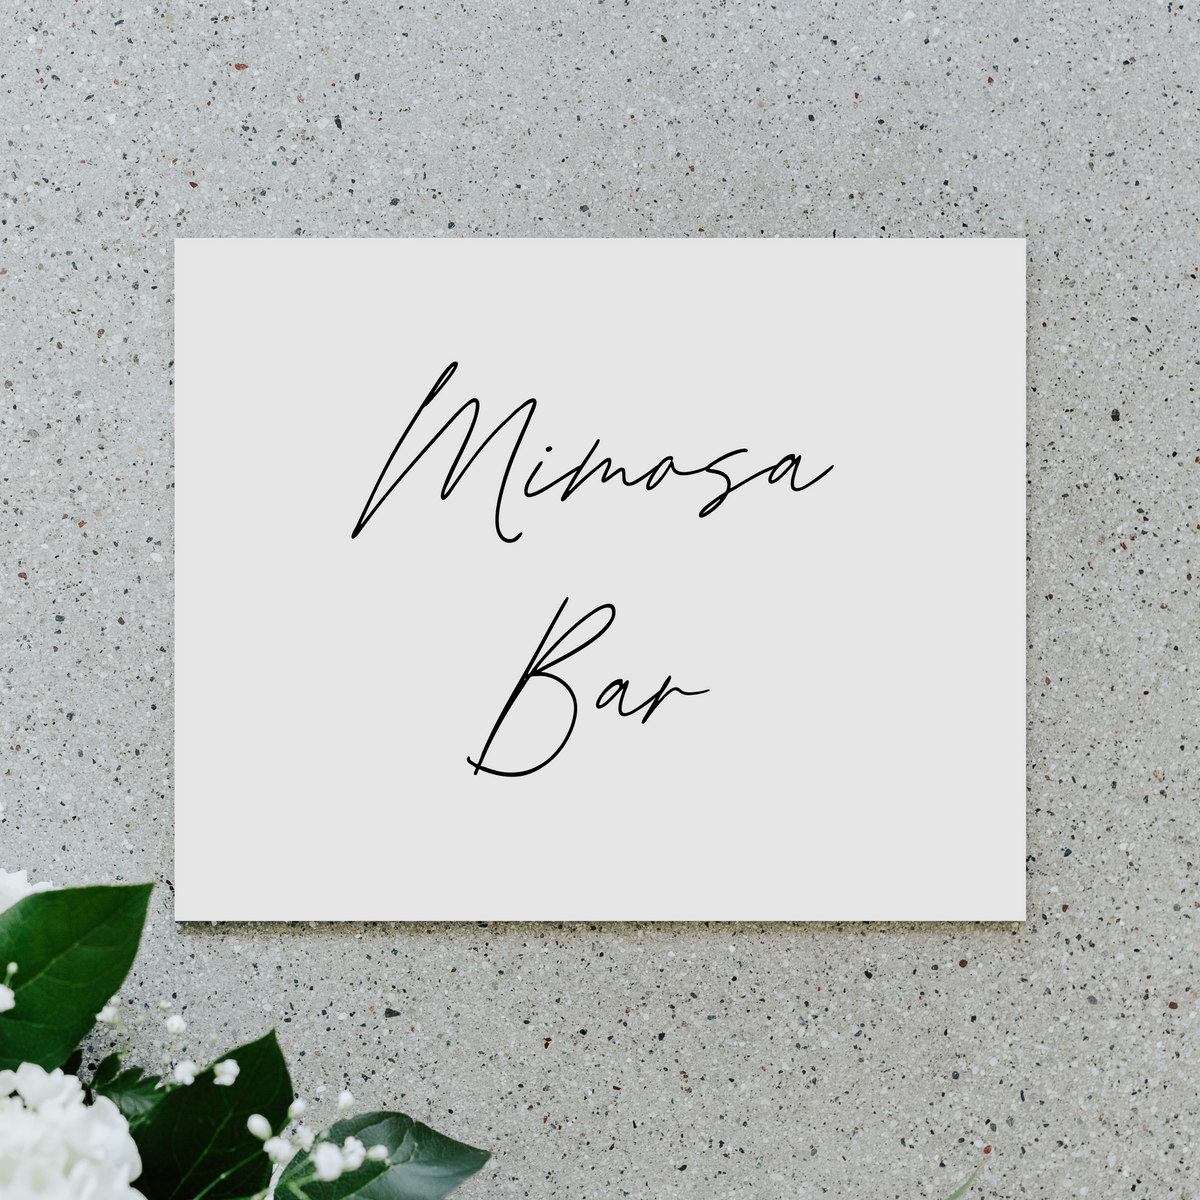 Mimosa Bar